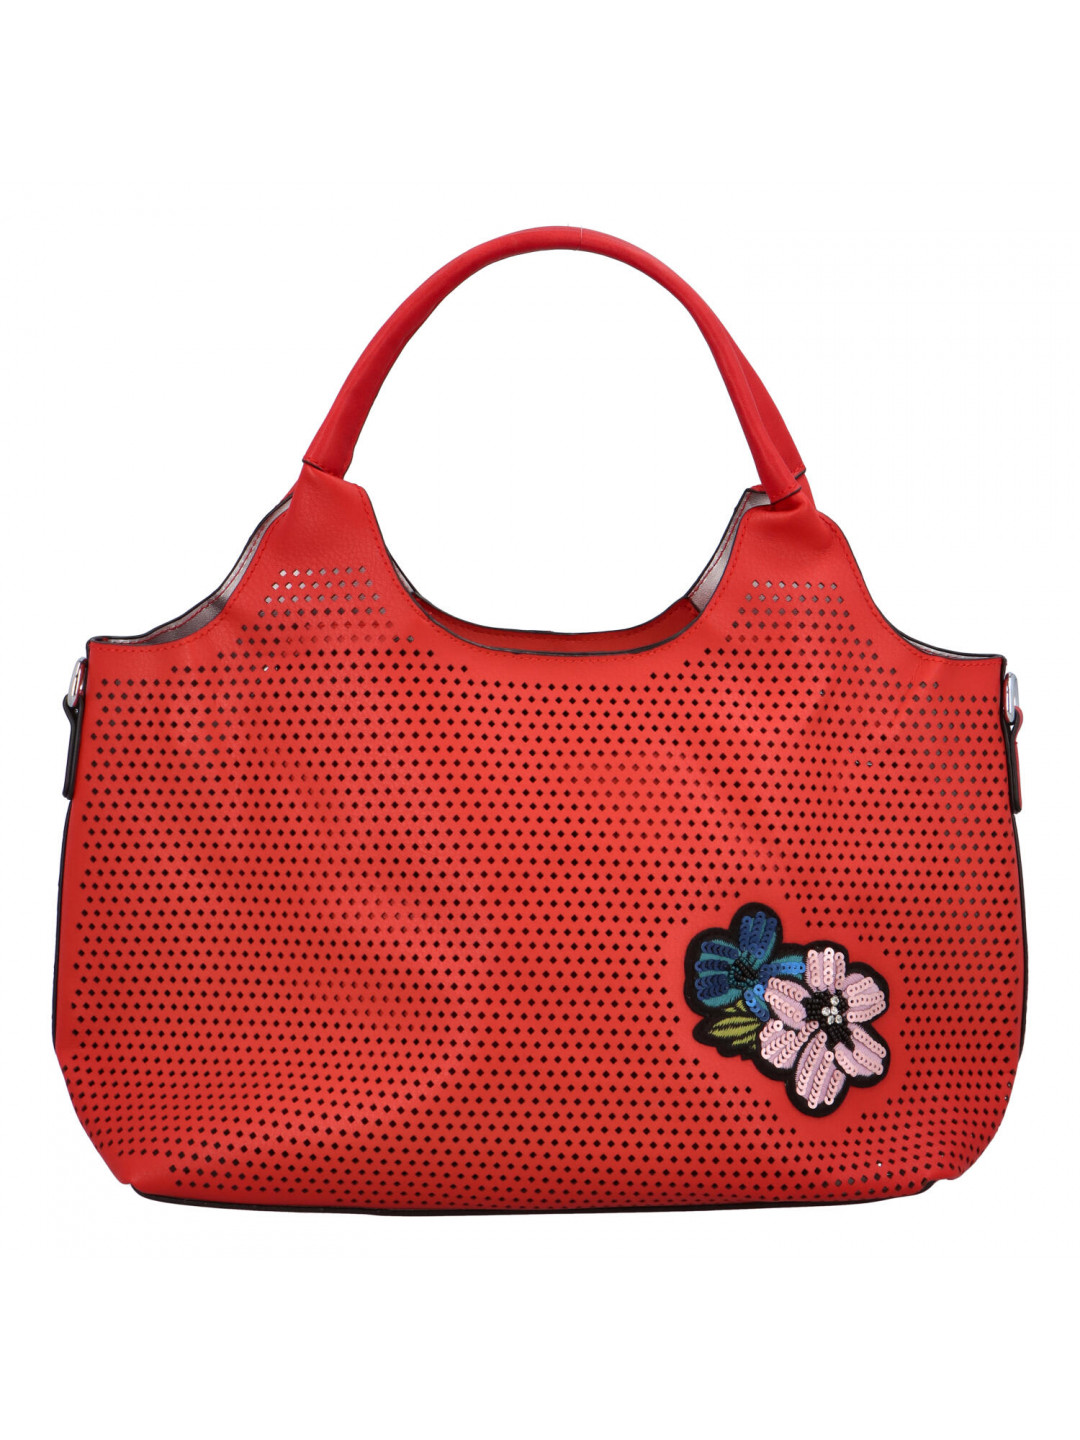 Moderní dámská červená perforovaná kabelka – Maria C Melaney